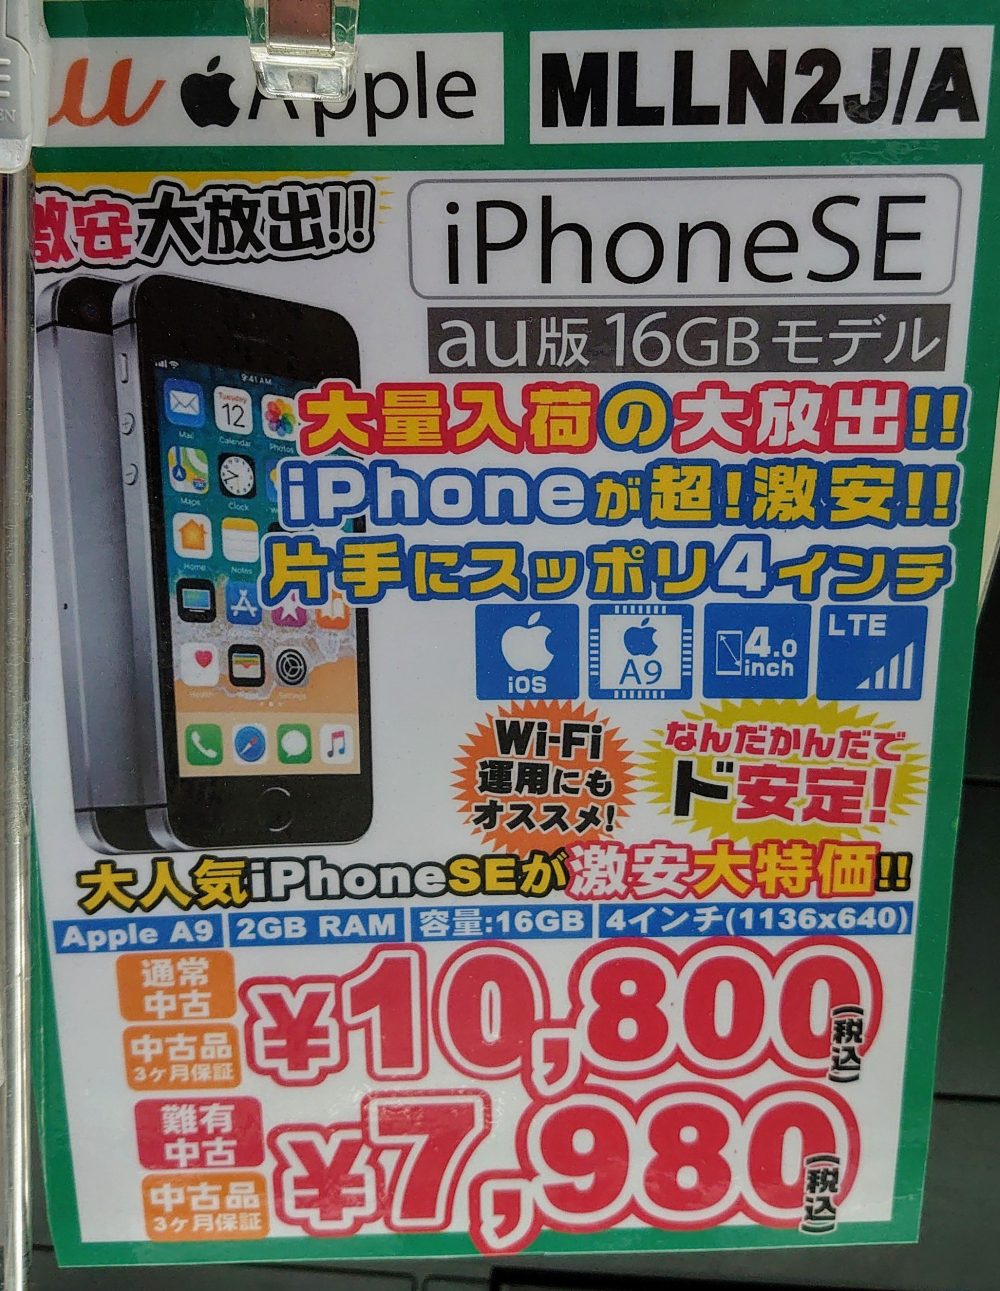 イオシスでiPhone SE各種が税込7,980円〜で販売中【オンラインでも】